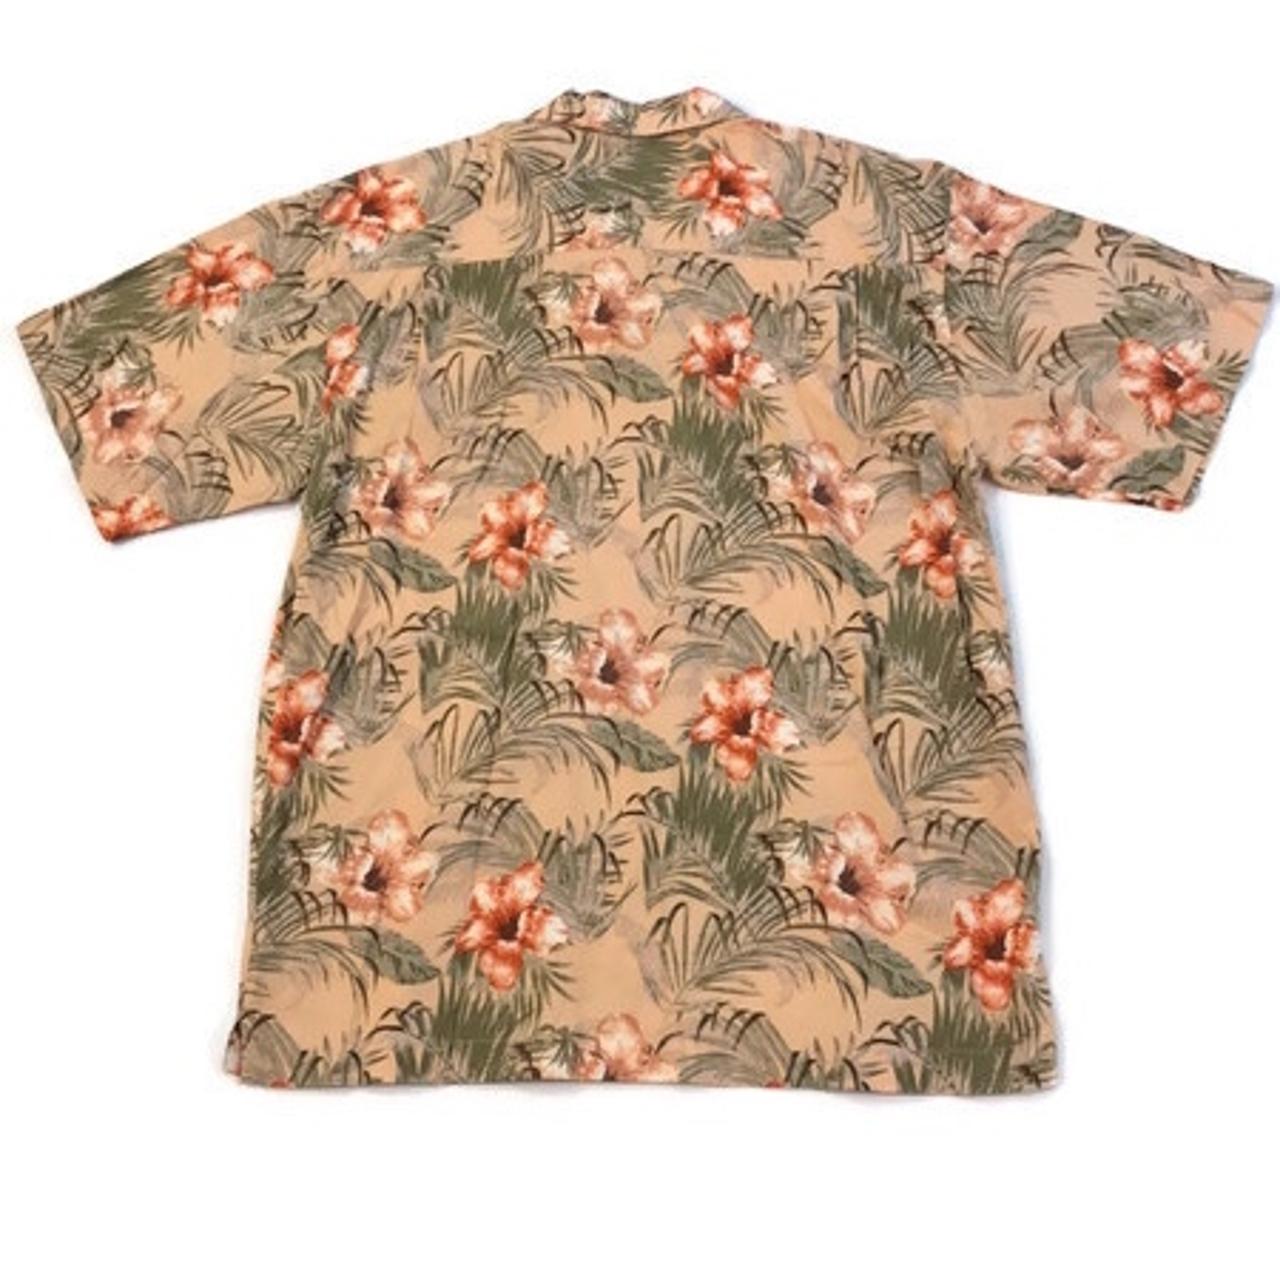 Magellan Sportswear Tropical Hawaiian Short Sleeve